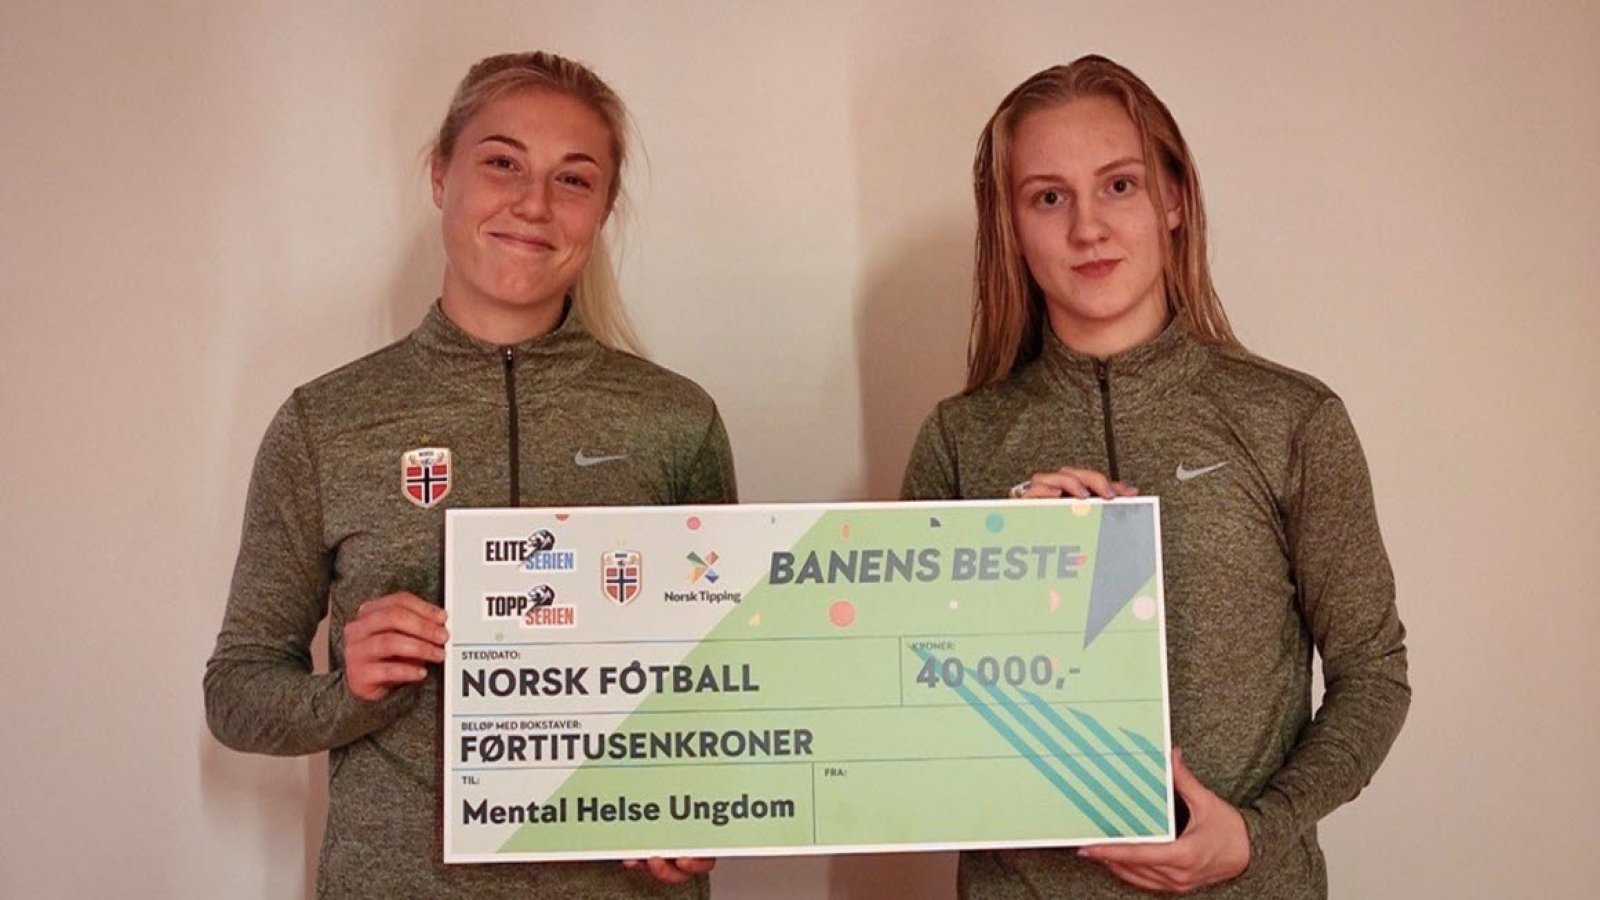 Landslagsspillerne Sophie Roman Haug og Sunniva Skoglund er blant spillerne som har donert sine Banens beste-premiepenger til Mental Helse Ungdom. | Foto: NFF